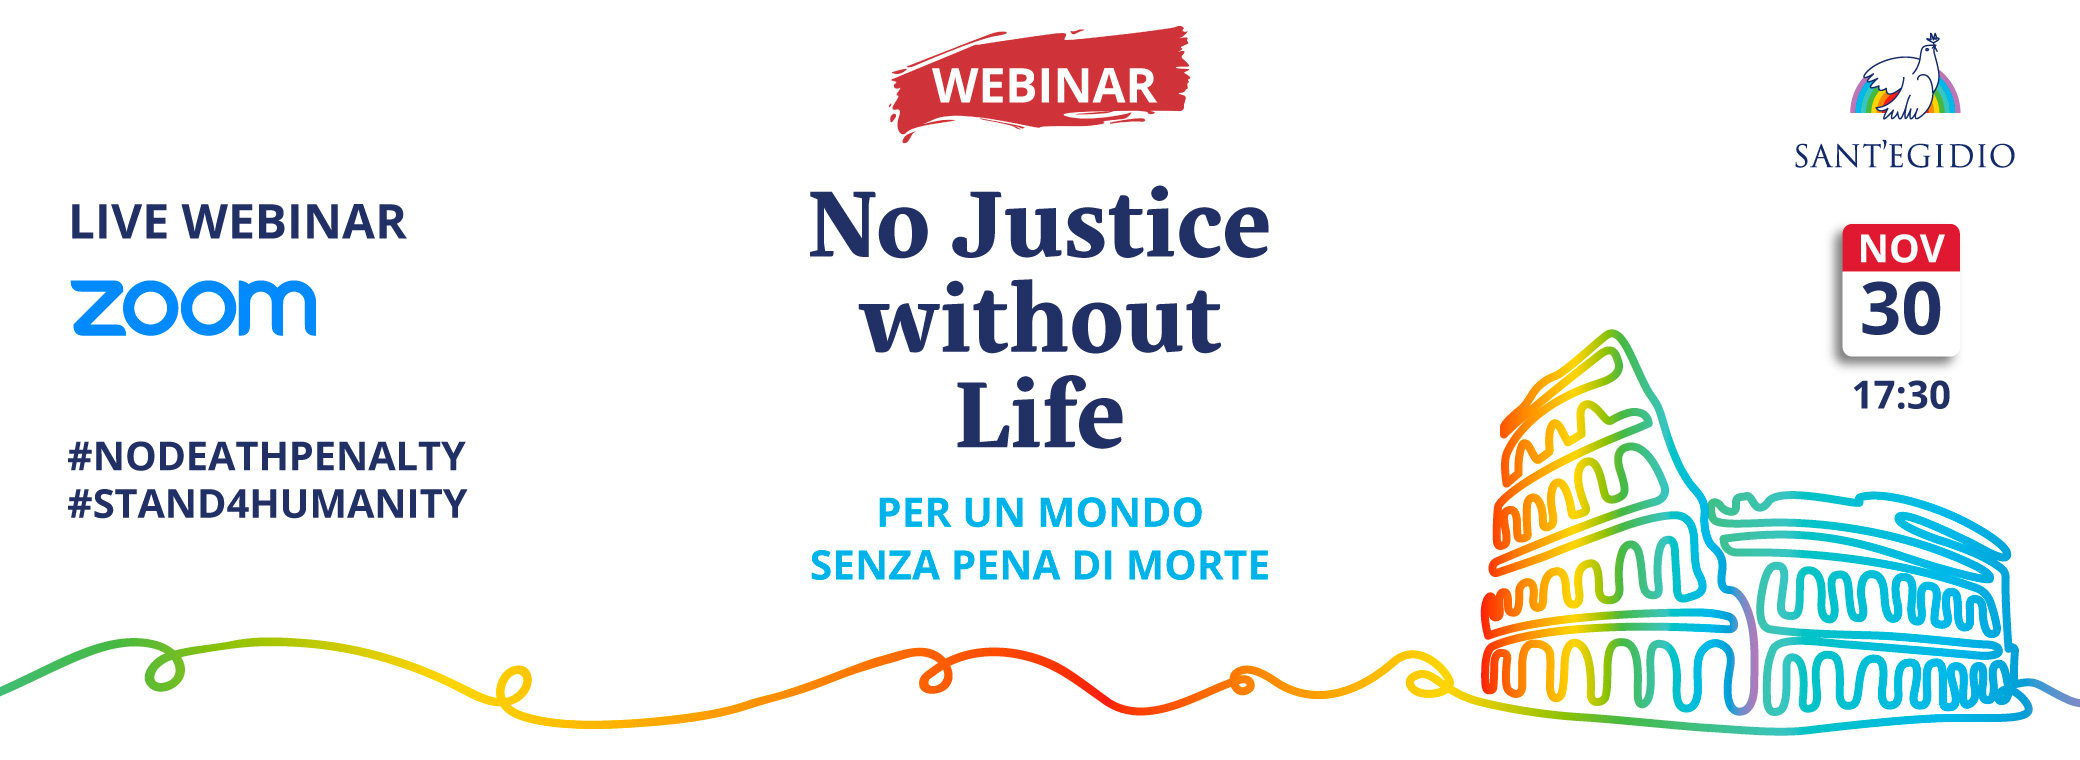 30 novembre, Webinar: No Justice Without Life - Per un mondo senza pena di morte. Iscrizioni online